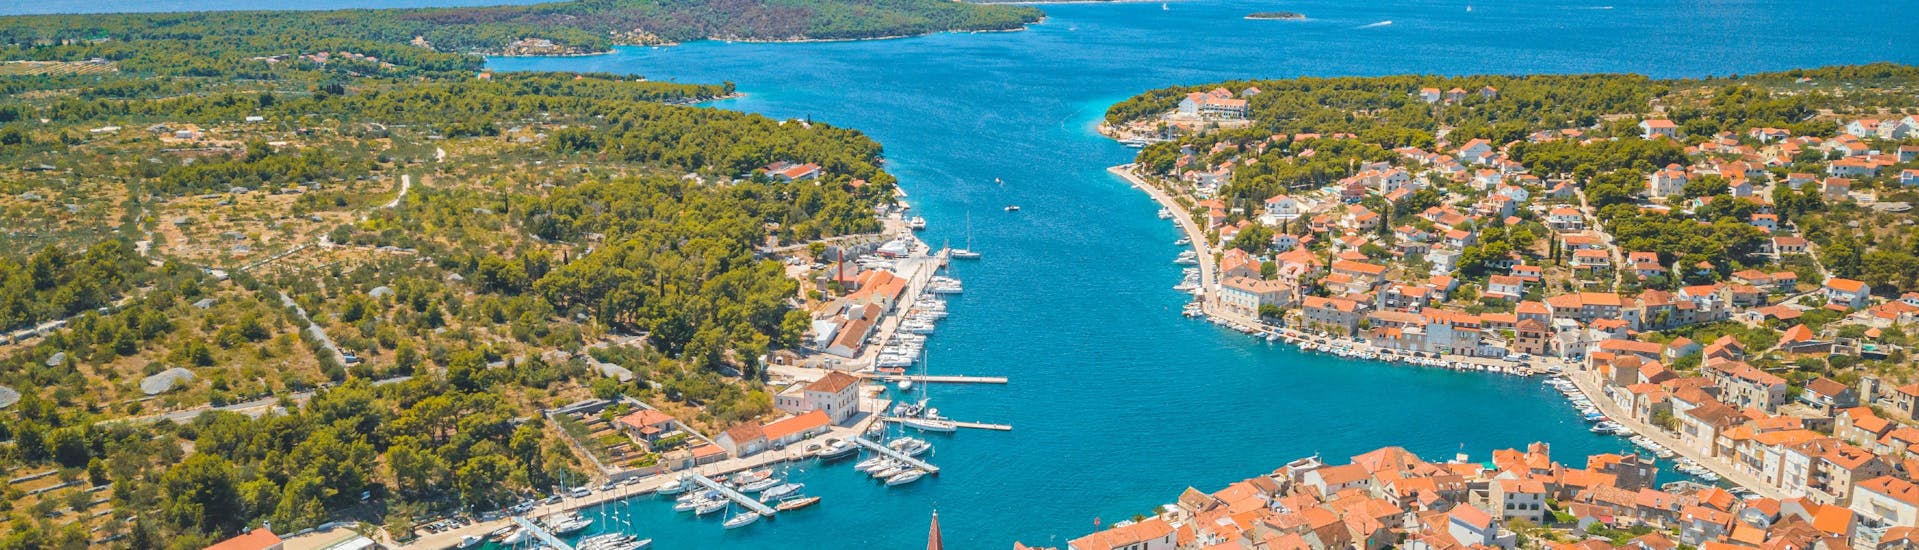 Photo du port de Hvar pendant la balade en bateau privé vers Hvar, Brač et les îles Pakleni avec Mayer Charter Trogir.